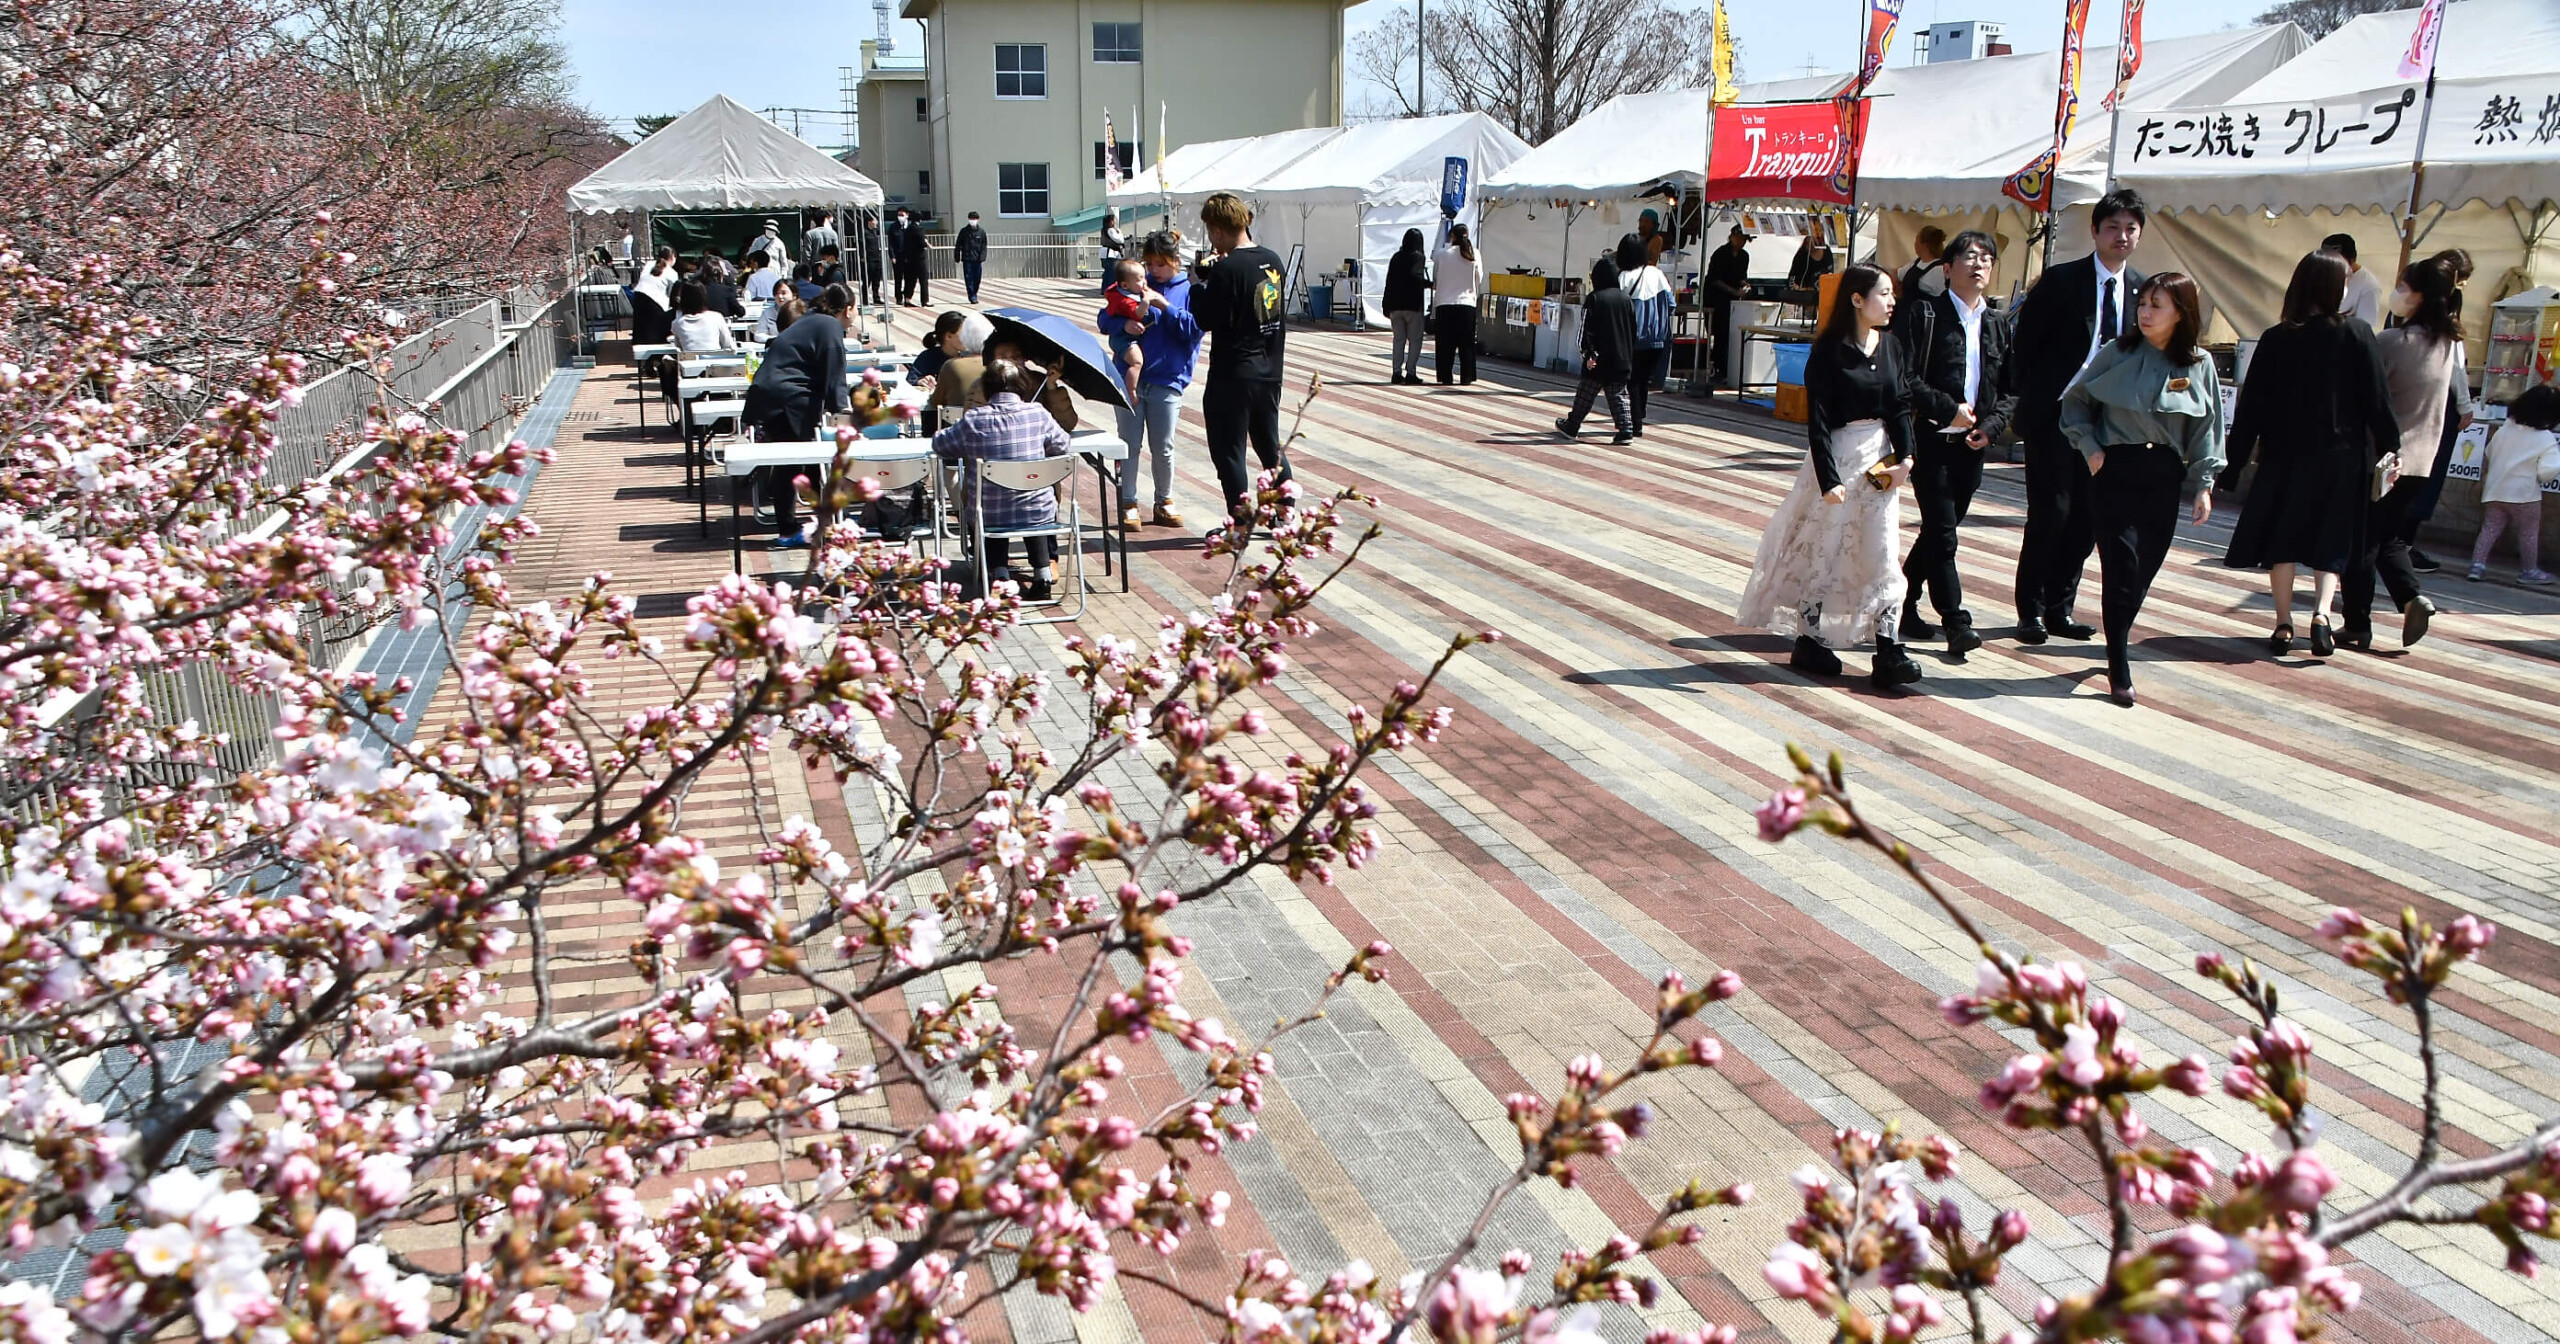 桜の開花が進む能代市役所のさくら庭で屋台村が開始